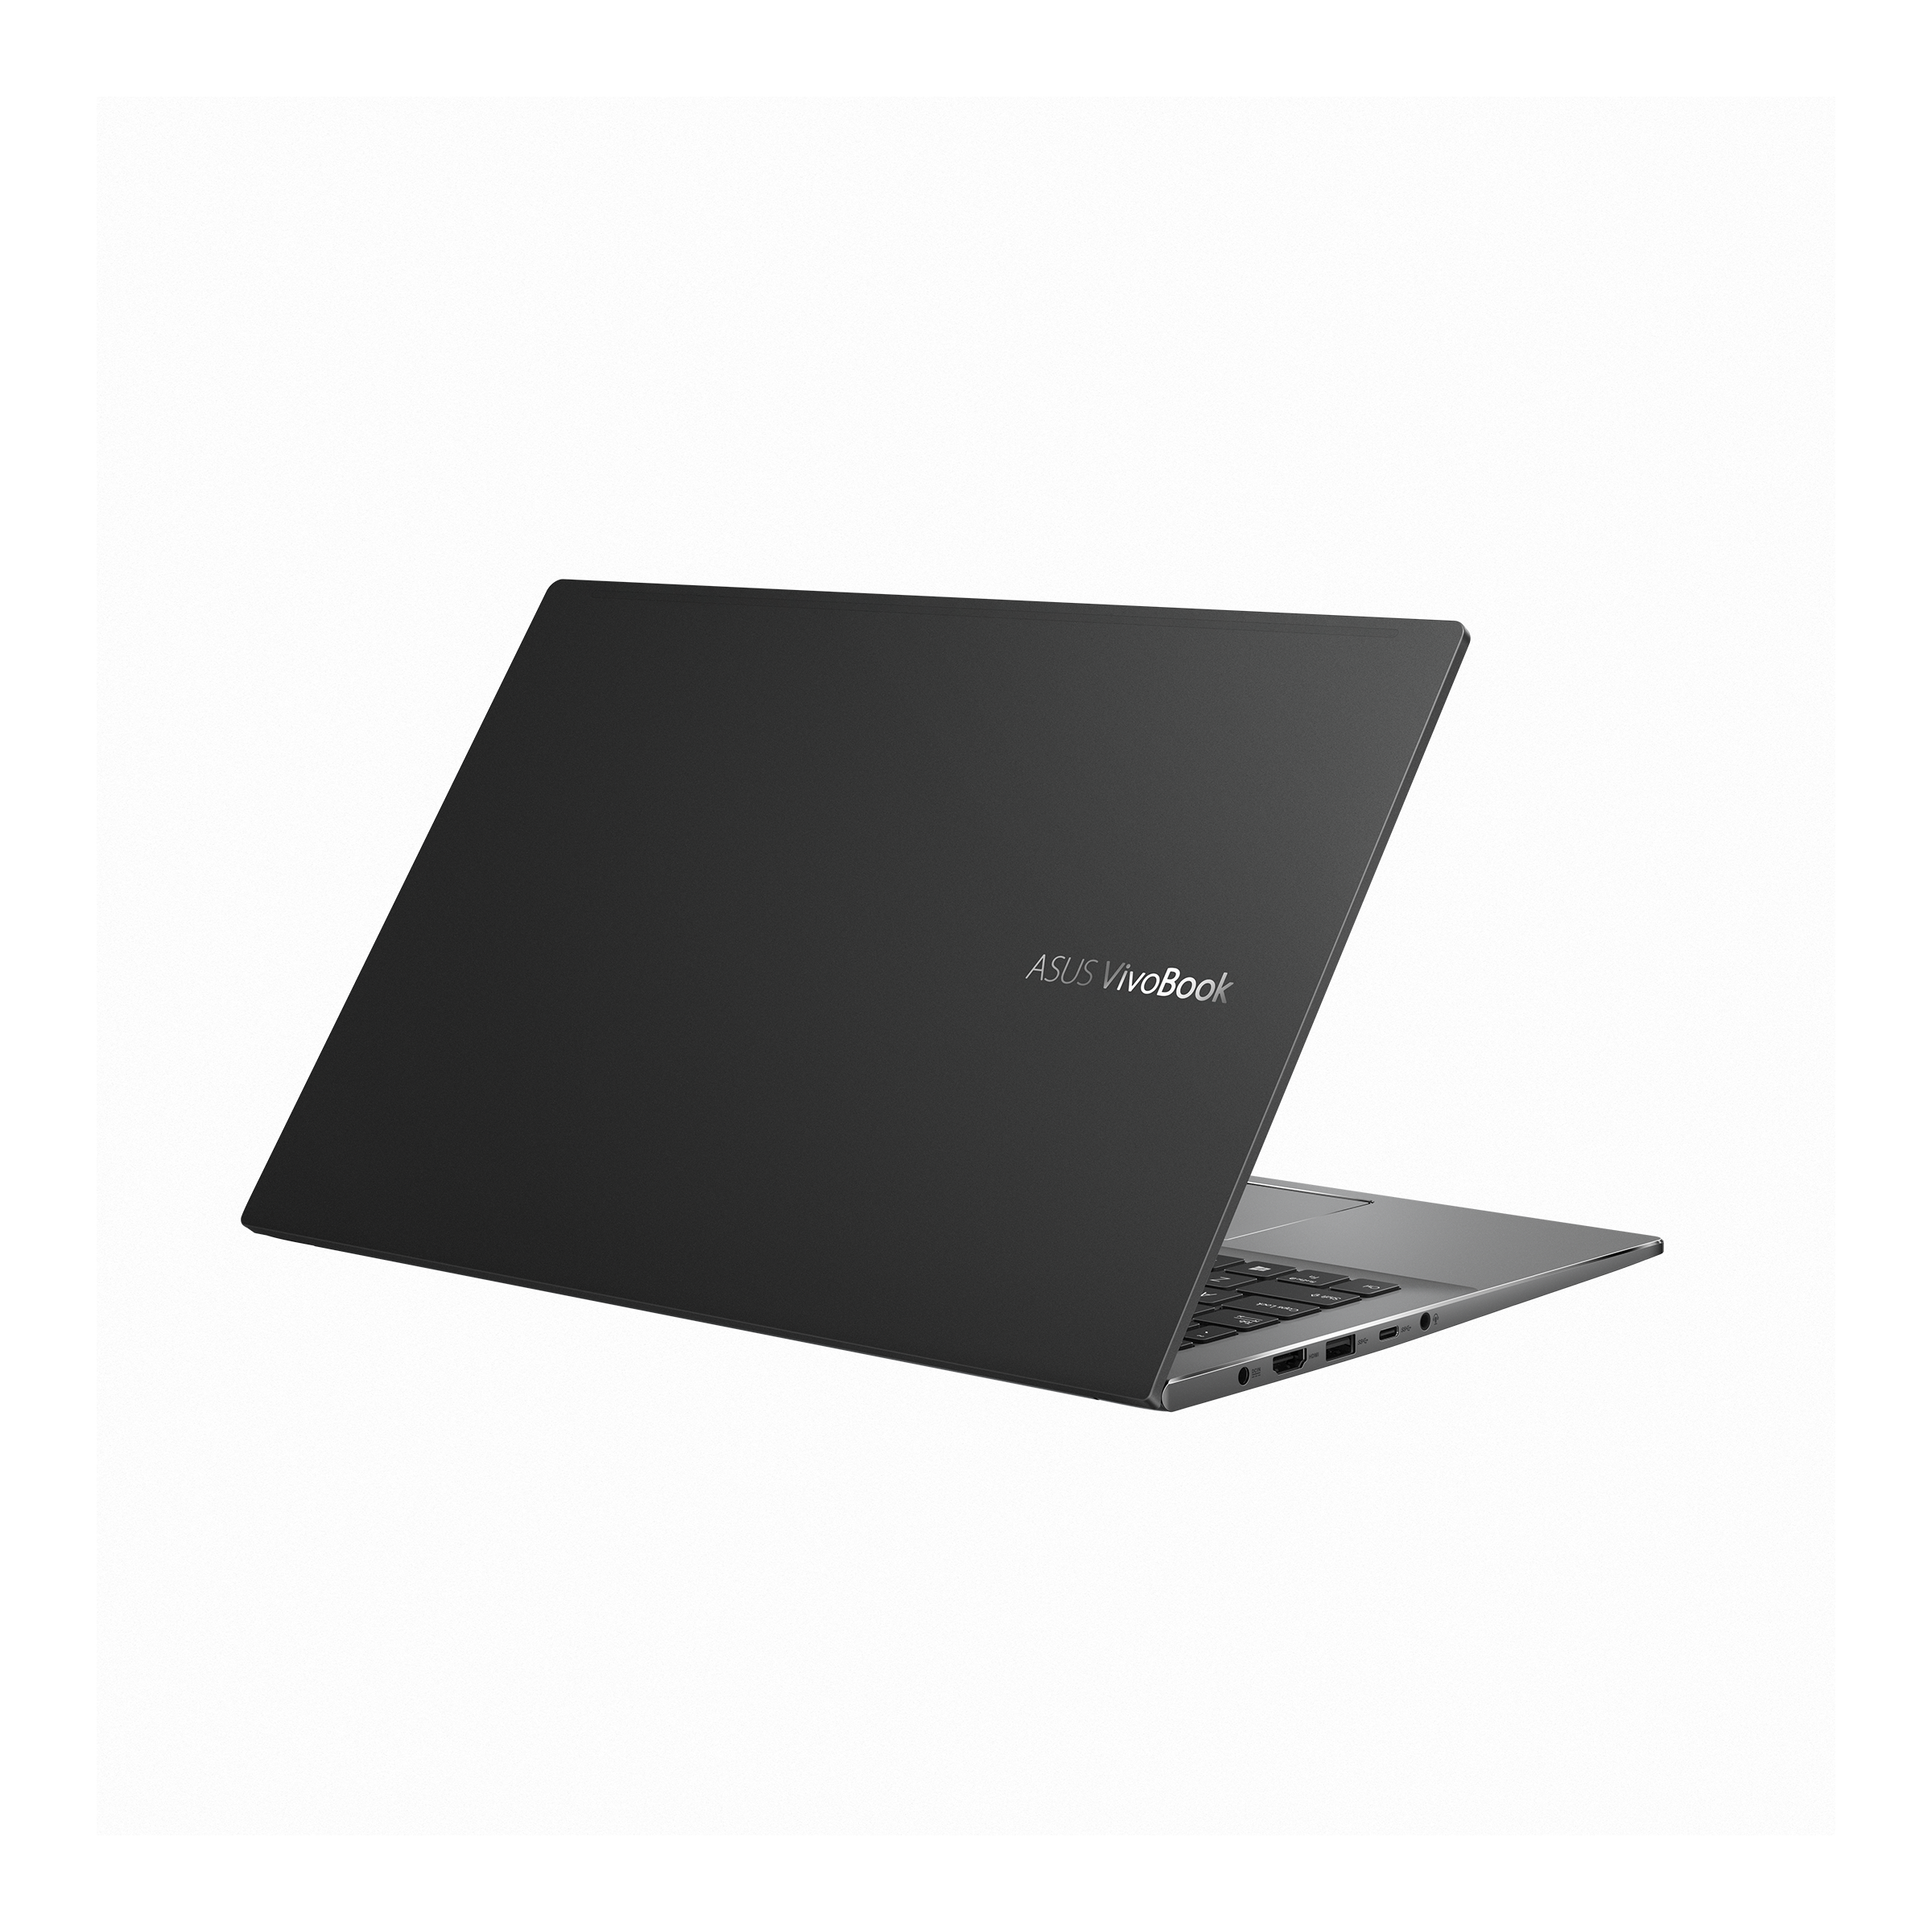 Vivobook S15 M533 Laptops For Home Asus Global